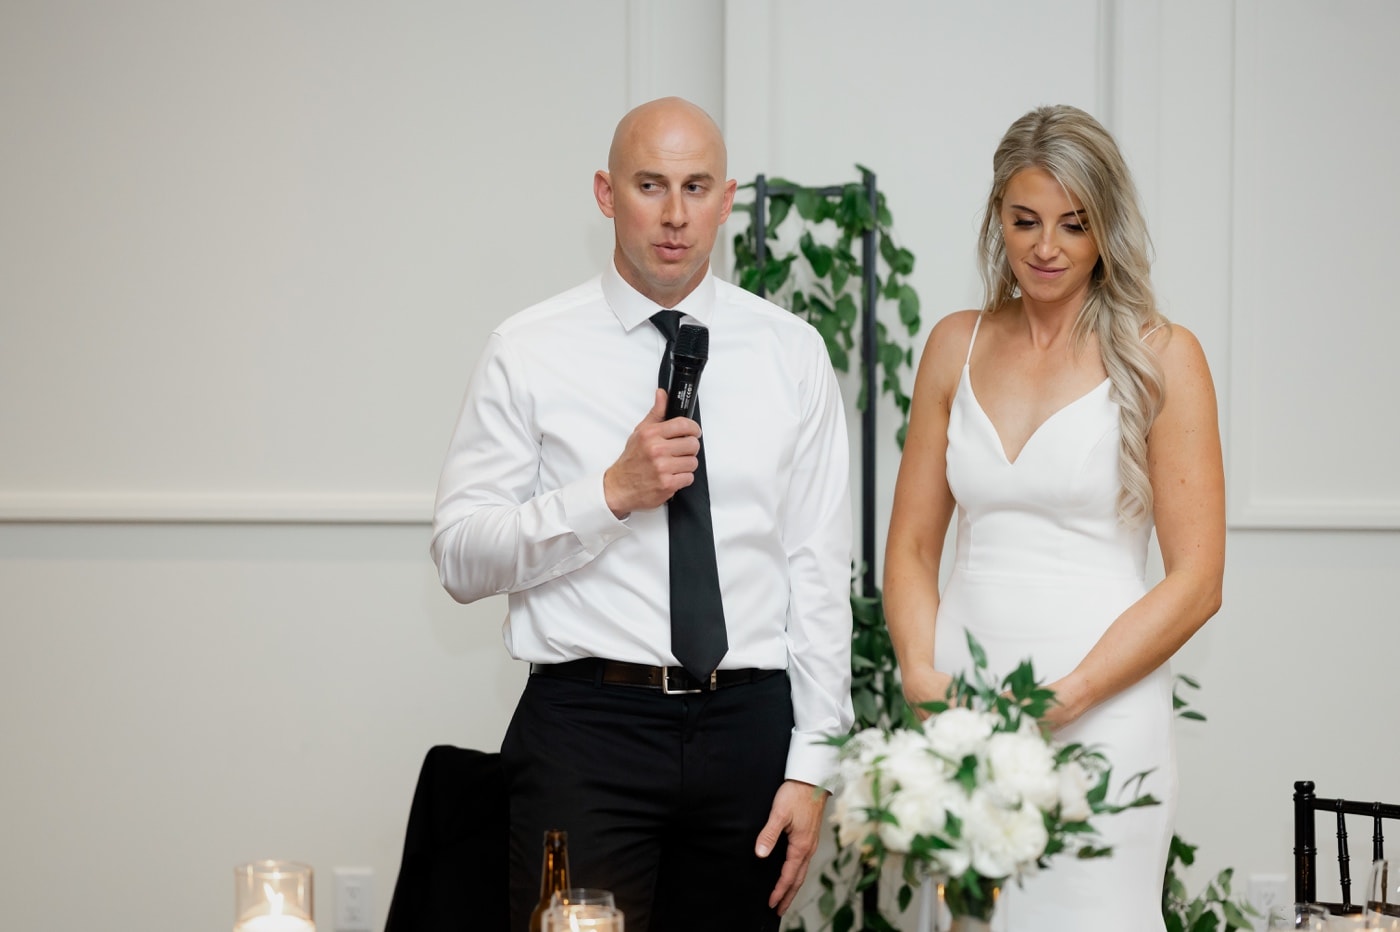 wedding speeches surety hotel reception